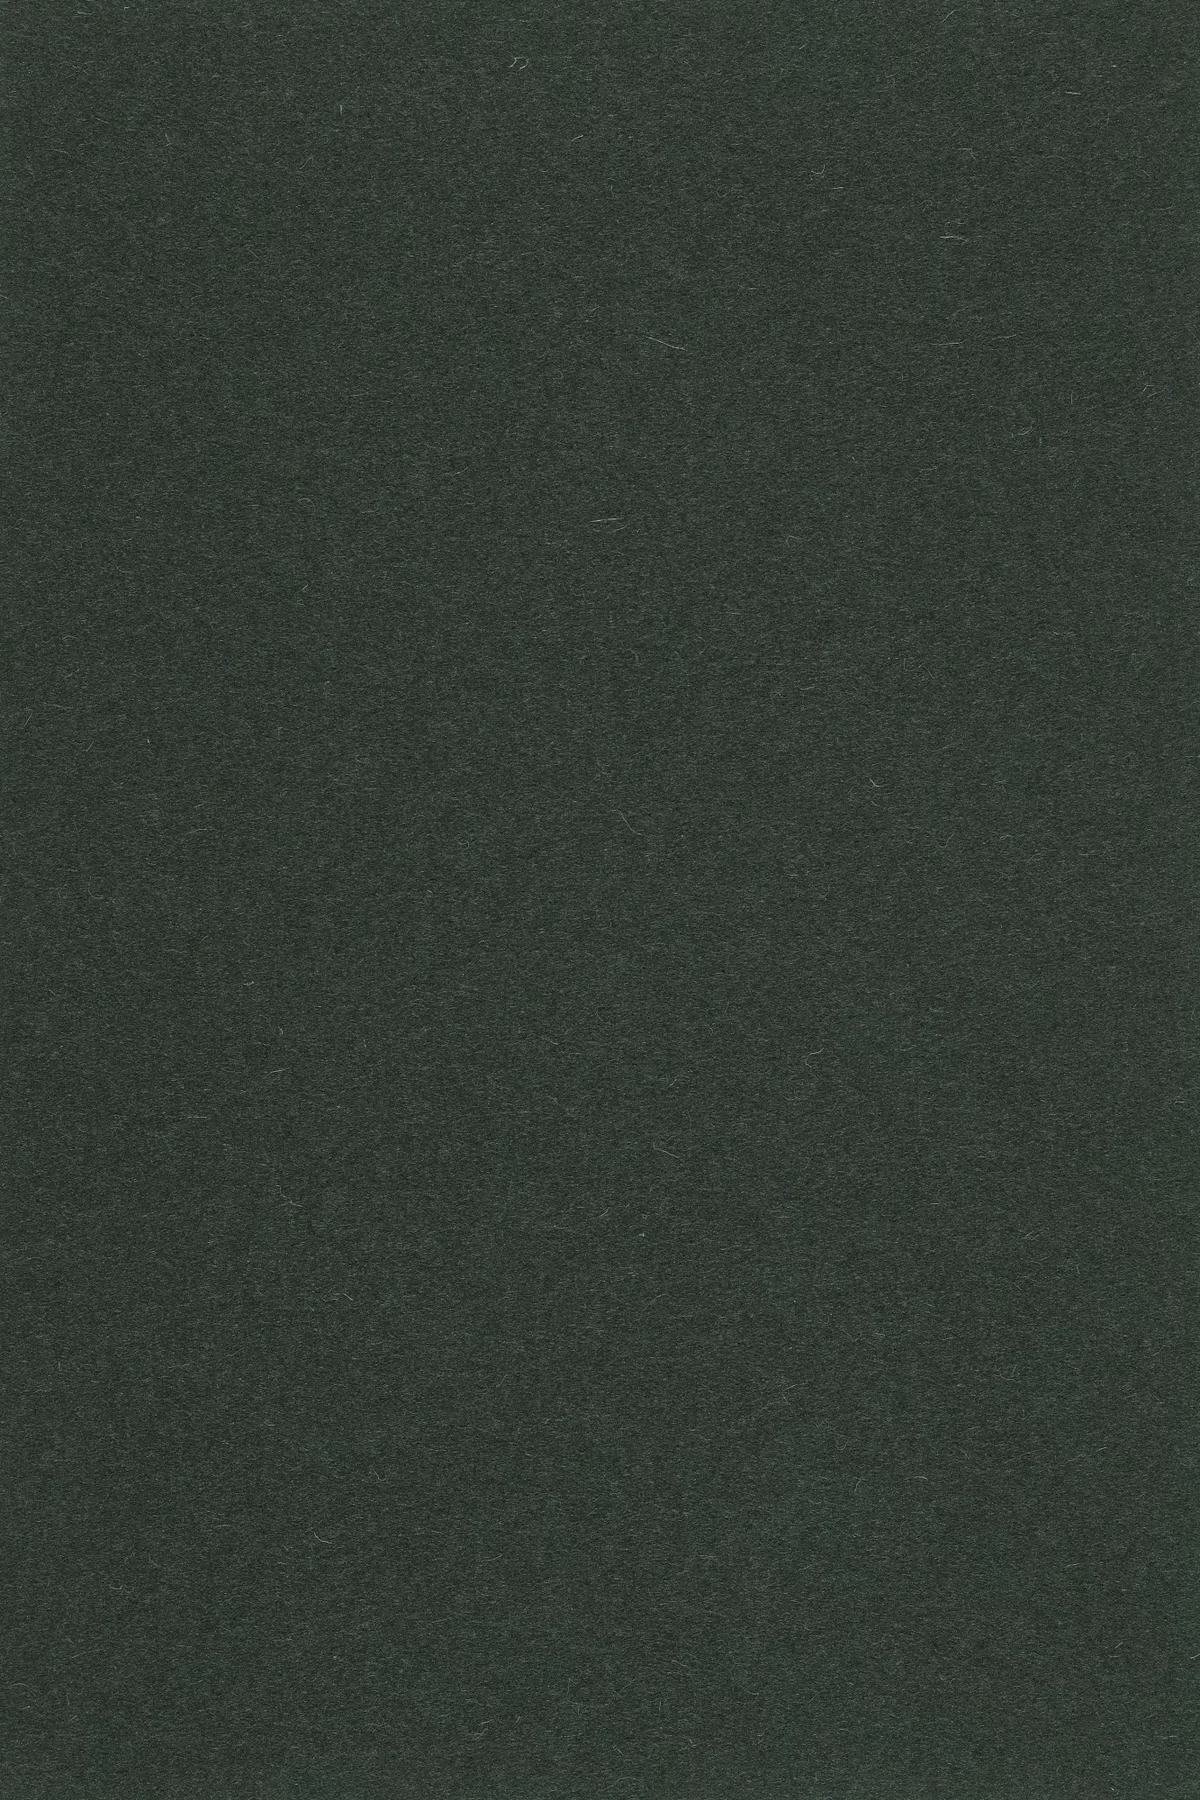 Fabric sample Divina 3 384 grey